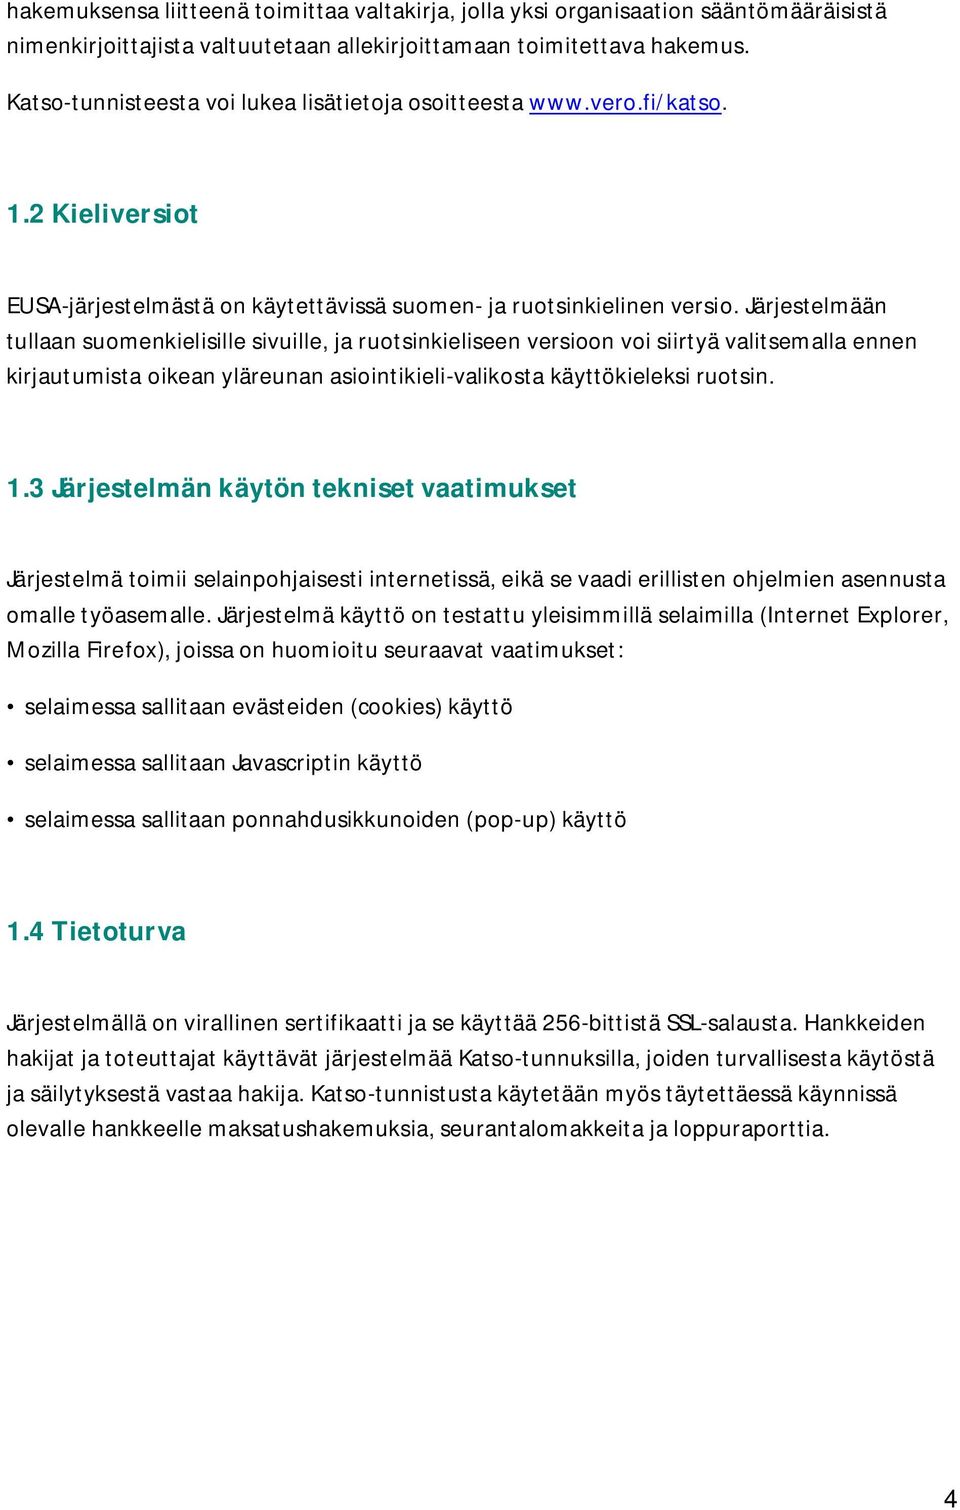 Järjestelmään tullaan suomenkielisille sivuille, ja ruotsinkieliseen versioon voi siirtyä valitsemalla ennen kirjautumista oikean yläreunan asiointikieli-valikosta käyttökieleksi ruotsin. 1.